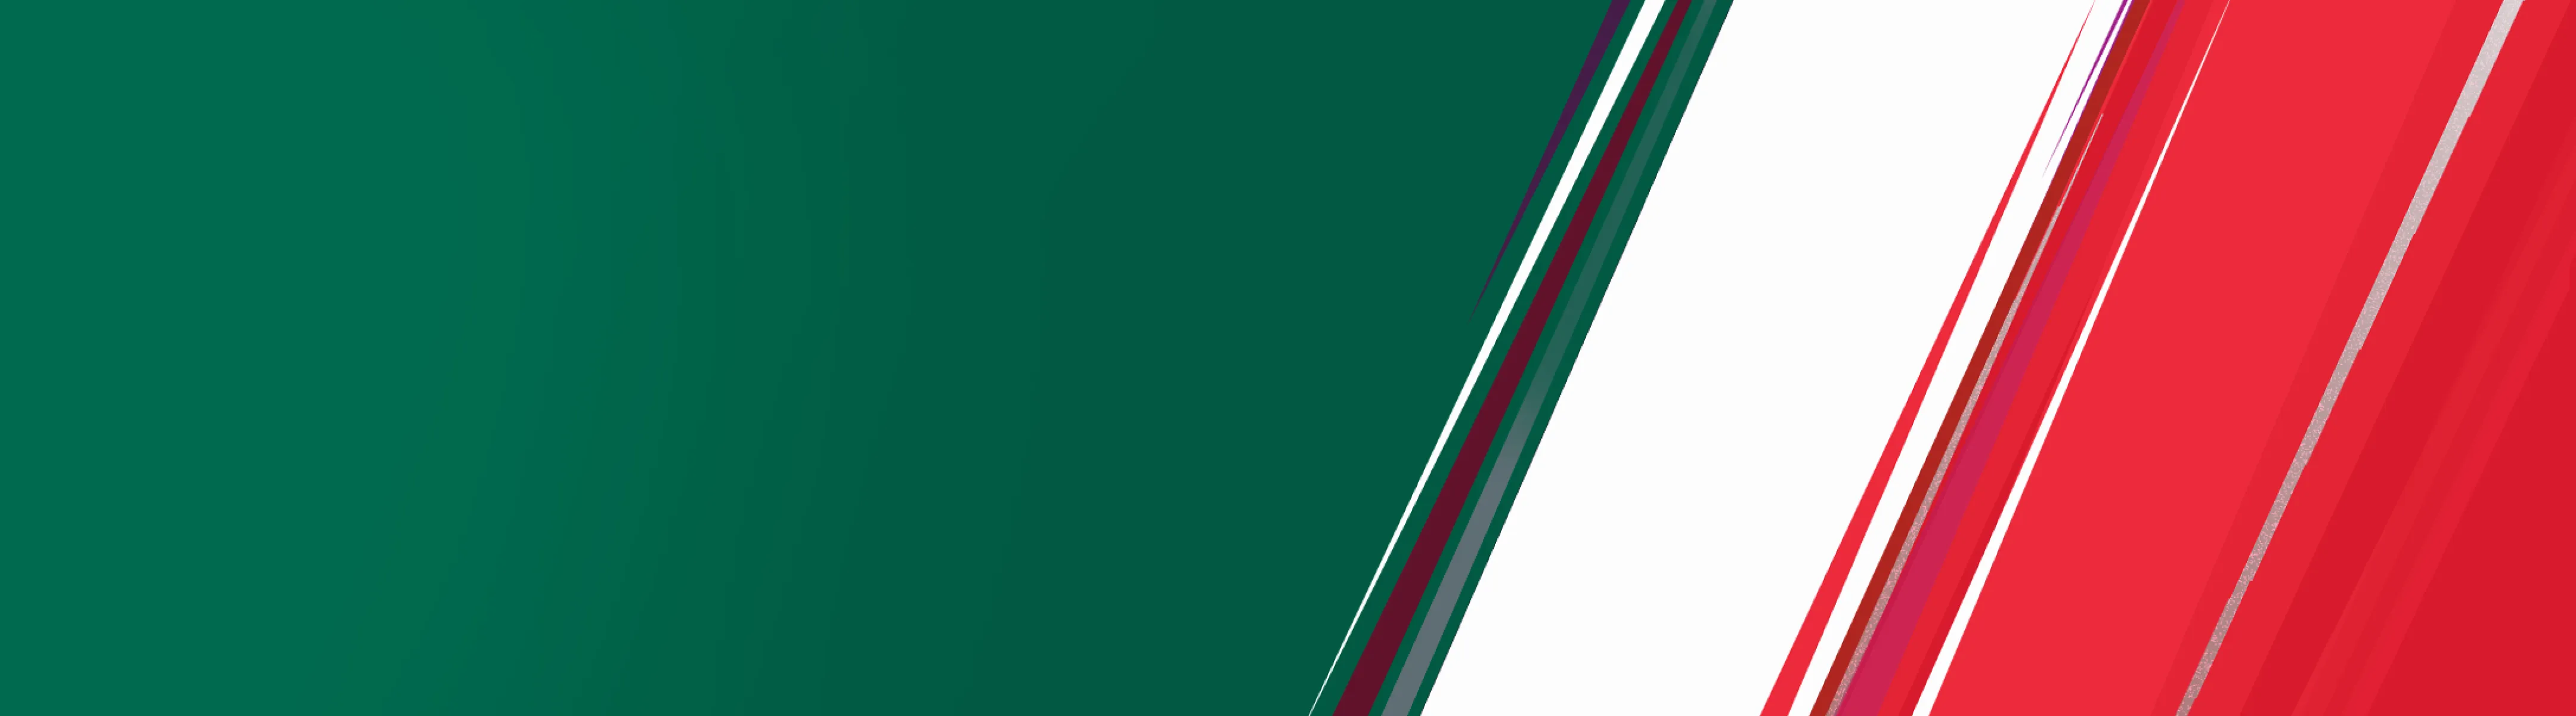 Banner of Bangladesh